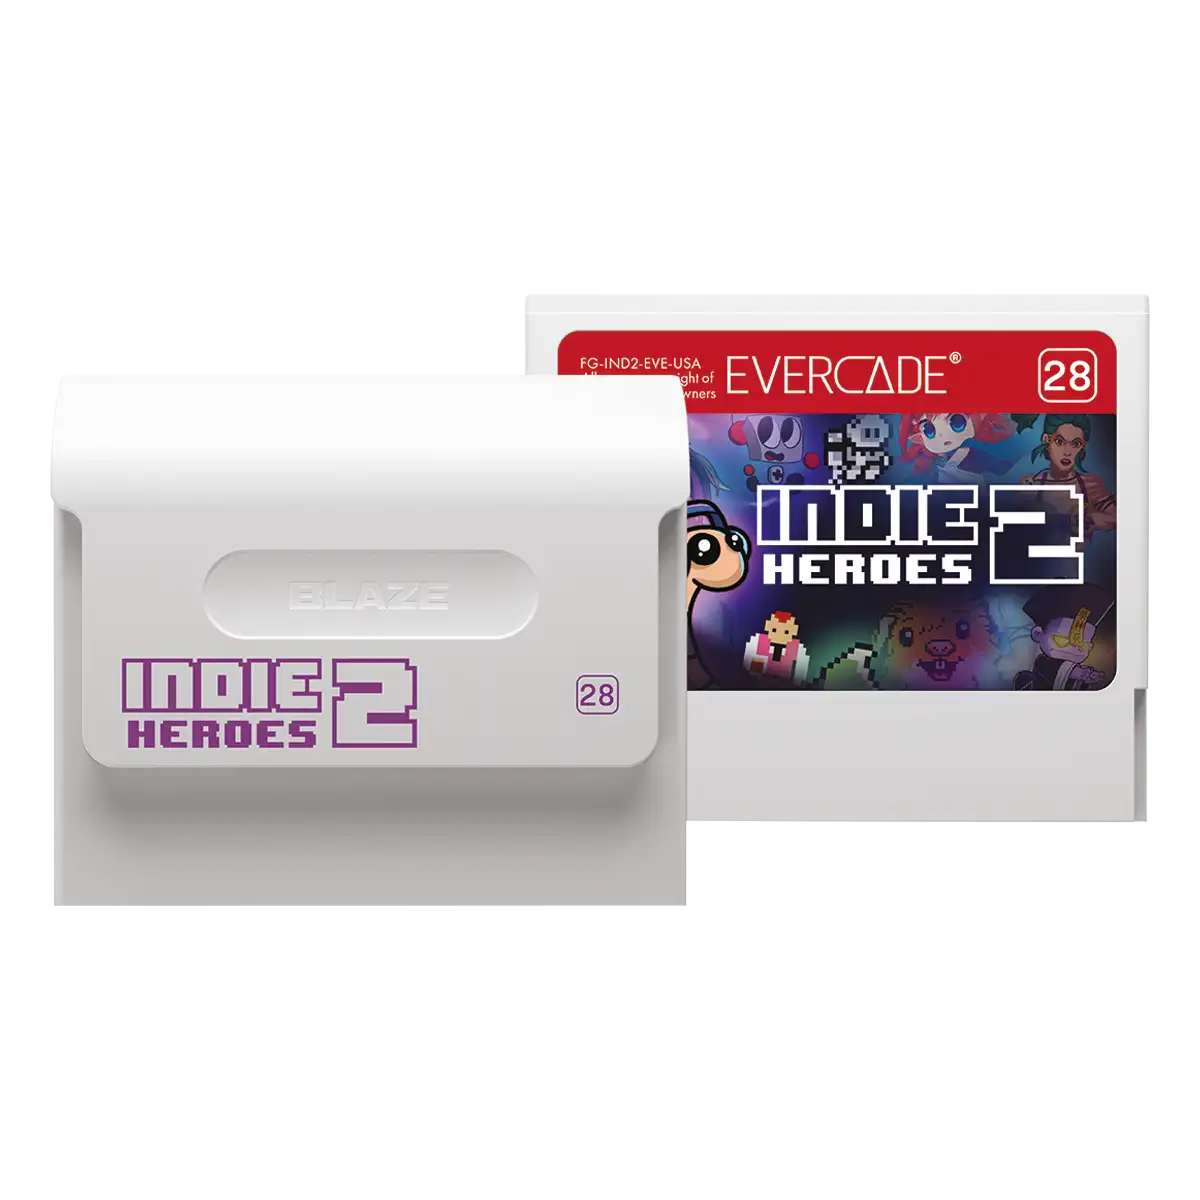 Blaze Evercade Indie Heroes Cartridge 2 Image 2